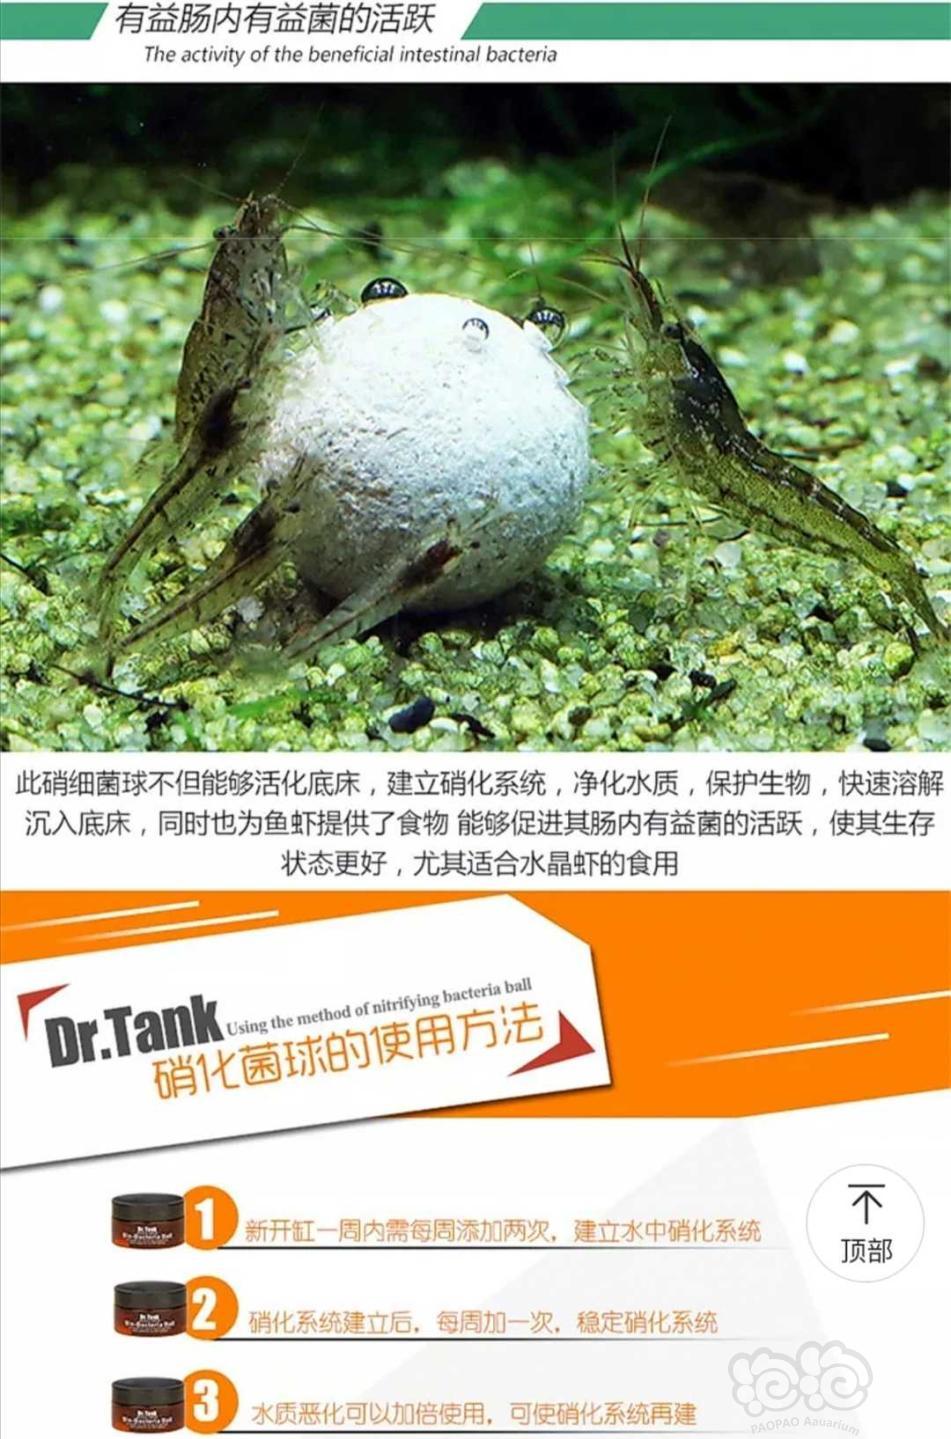 【用品】2019-10-31#RMB拍卖坦克二代硝化细菌球三粒装*3盒-图2